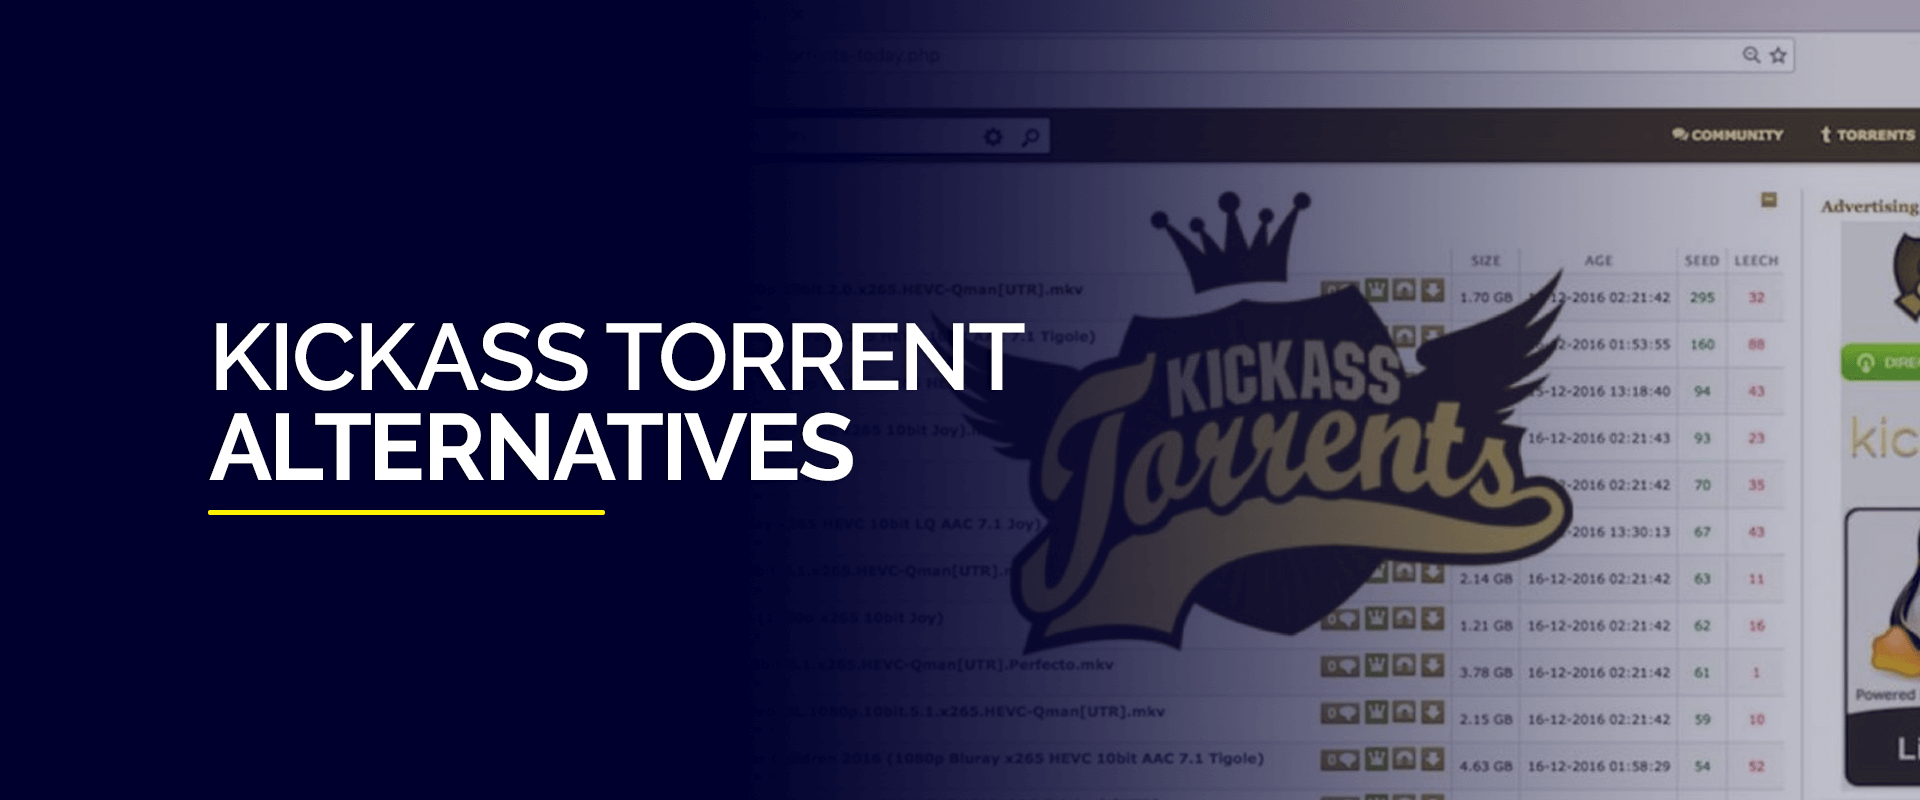 kickass torrent 